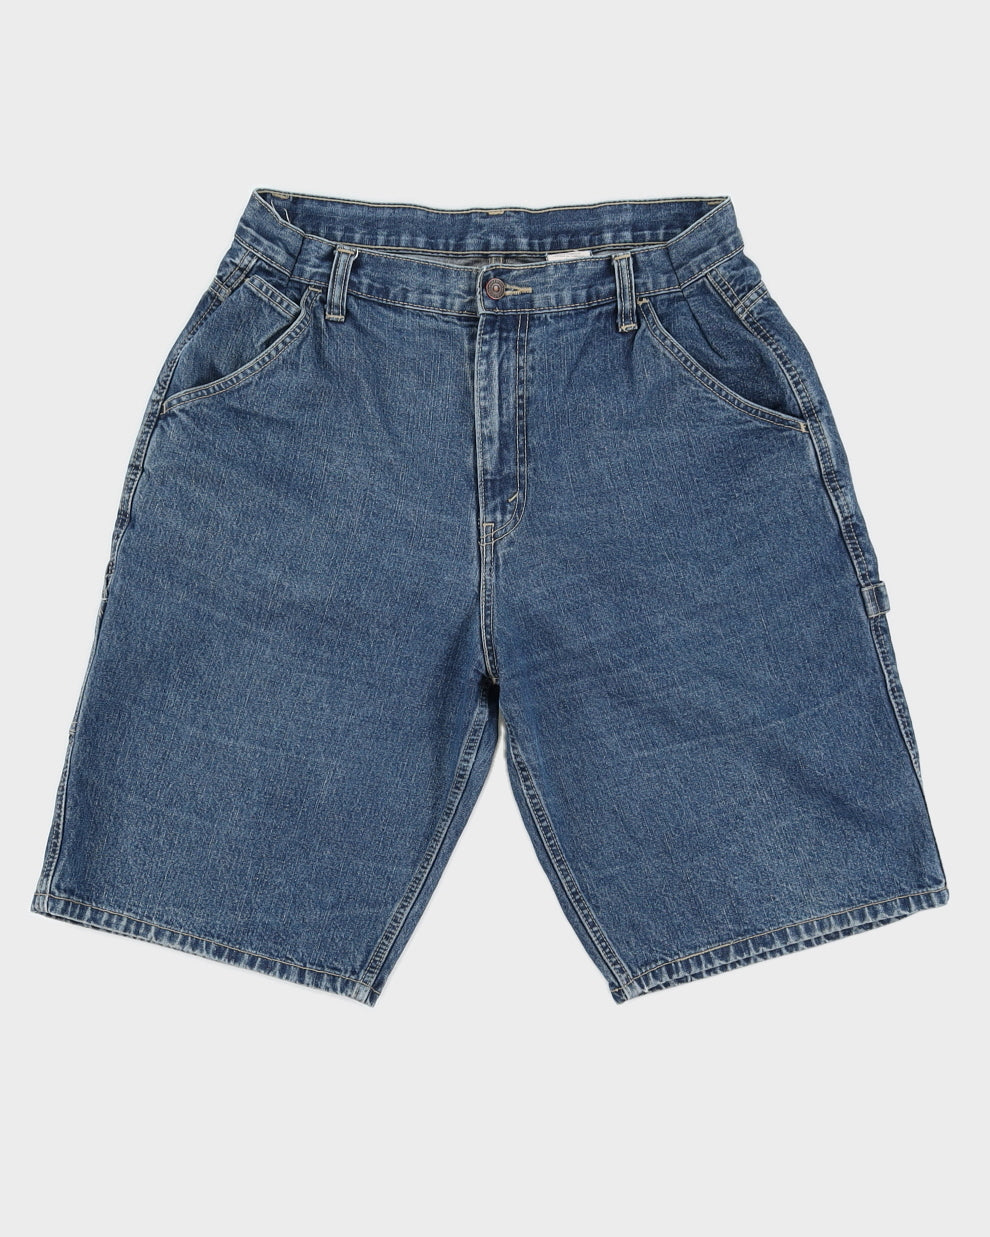 Vintage Levi's Baggy Jean Shorts - M